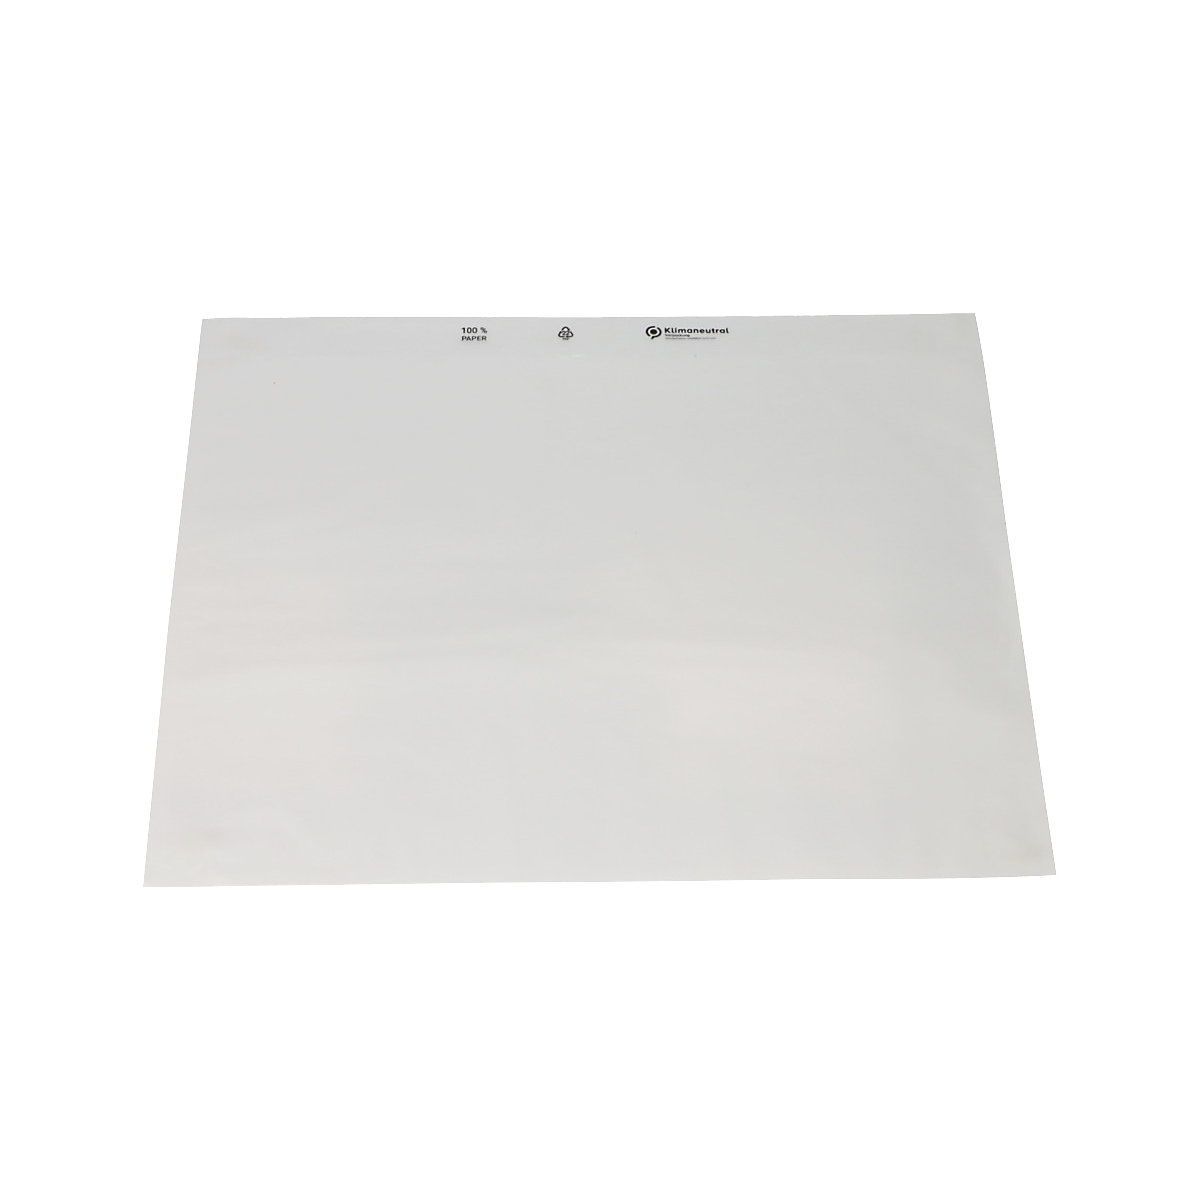 Pochettes porte-documents en papier – terra, transparent, lot de 1000, L x l 330 x 262 mm-1